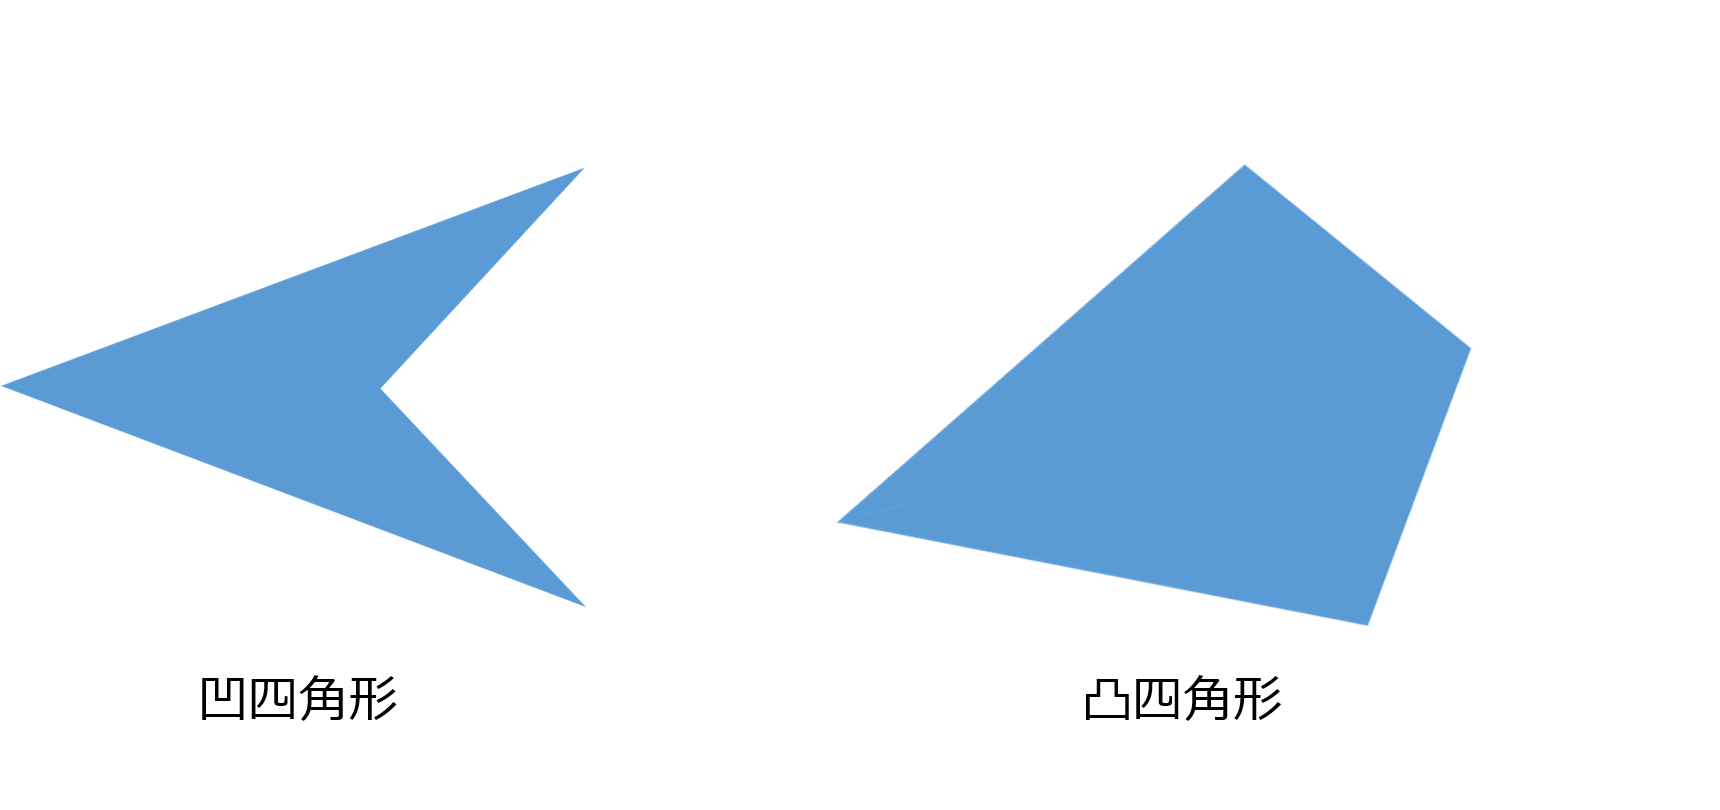 正方形の中にある三角形の面積の平均 Musyokutoumei